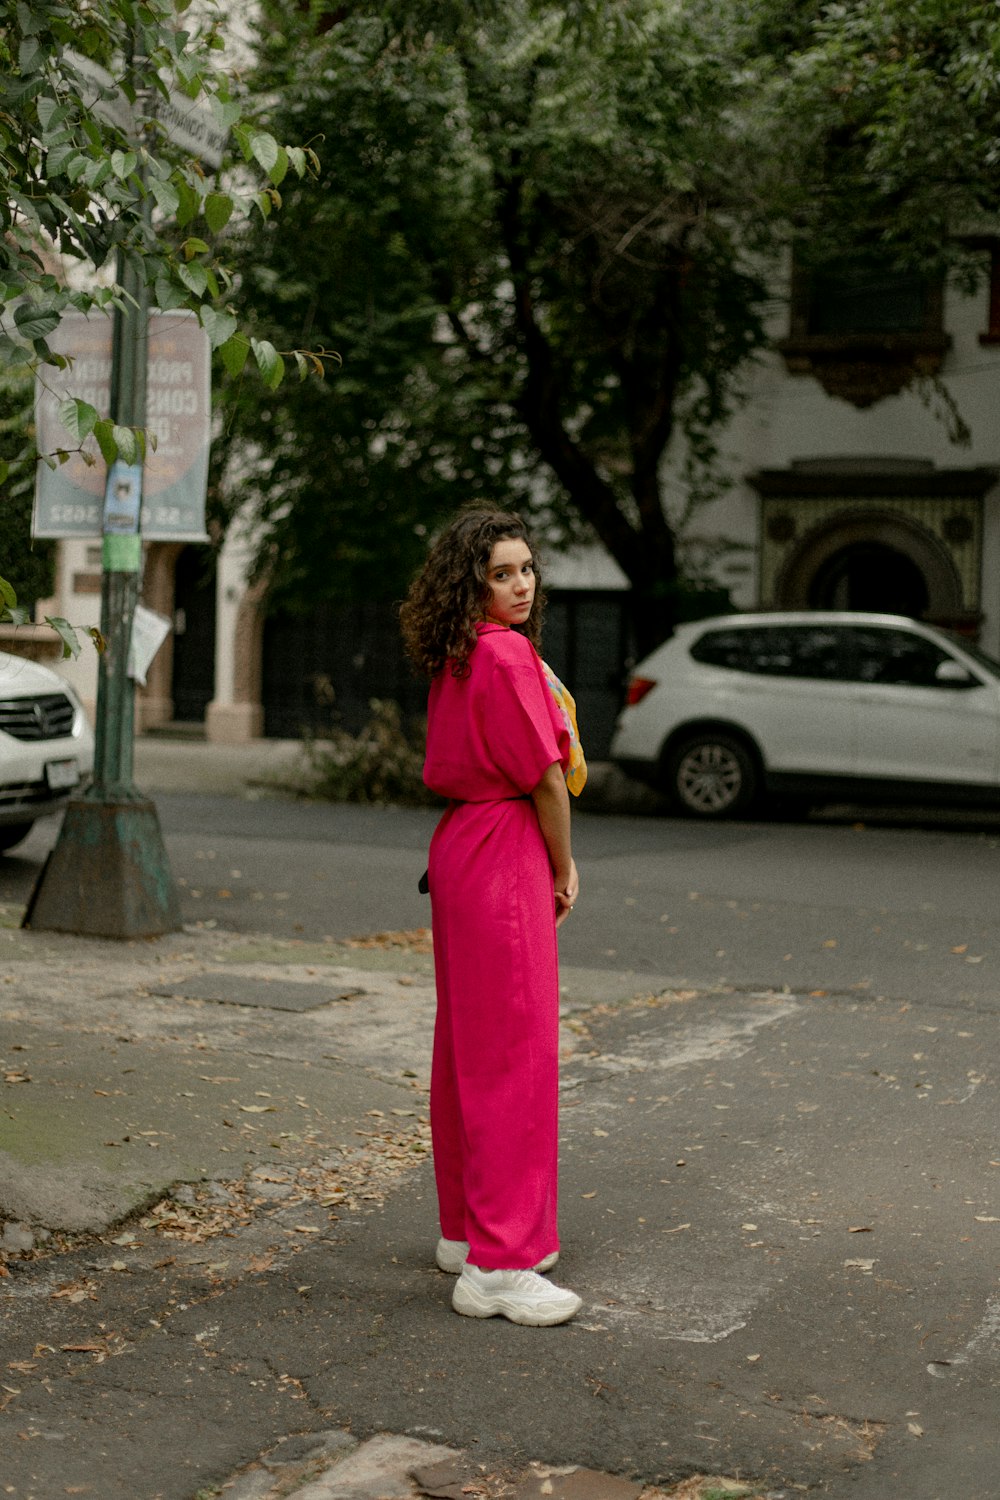 街角に立つピンクのドレスを着た女性